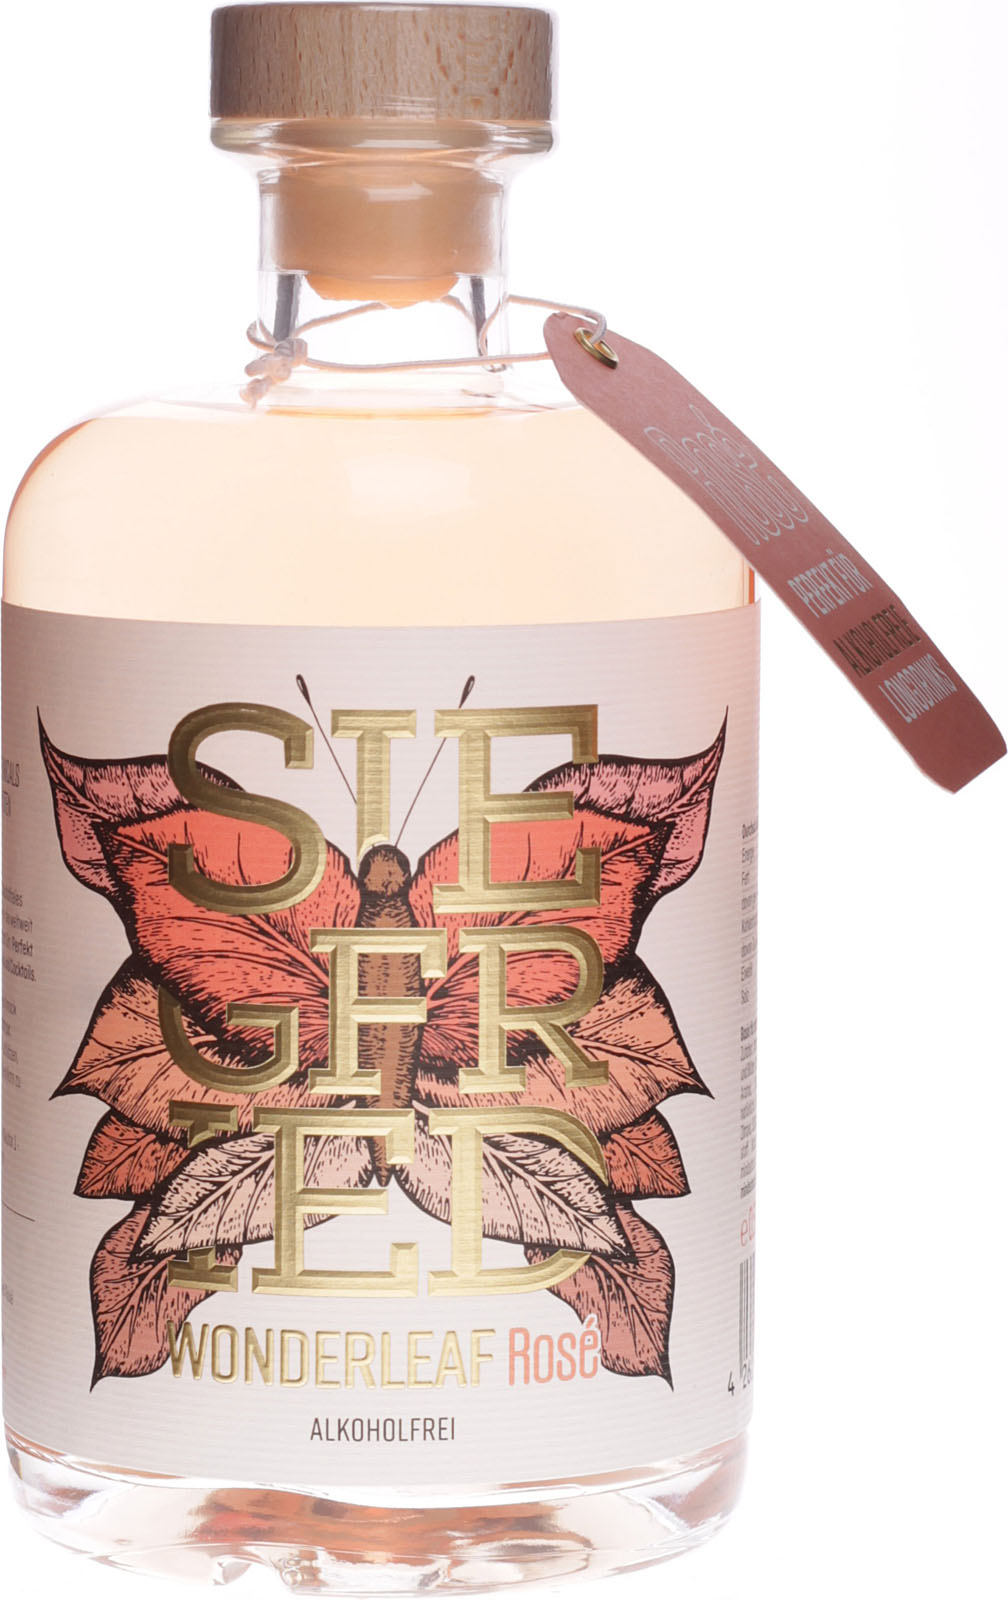 Siegfried Wonderleaf Rose alkoholfrei 0,5 im Shop Liter